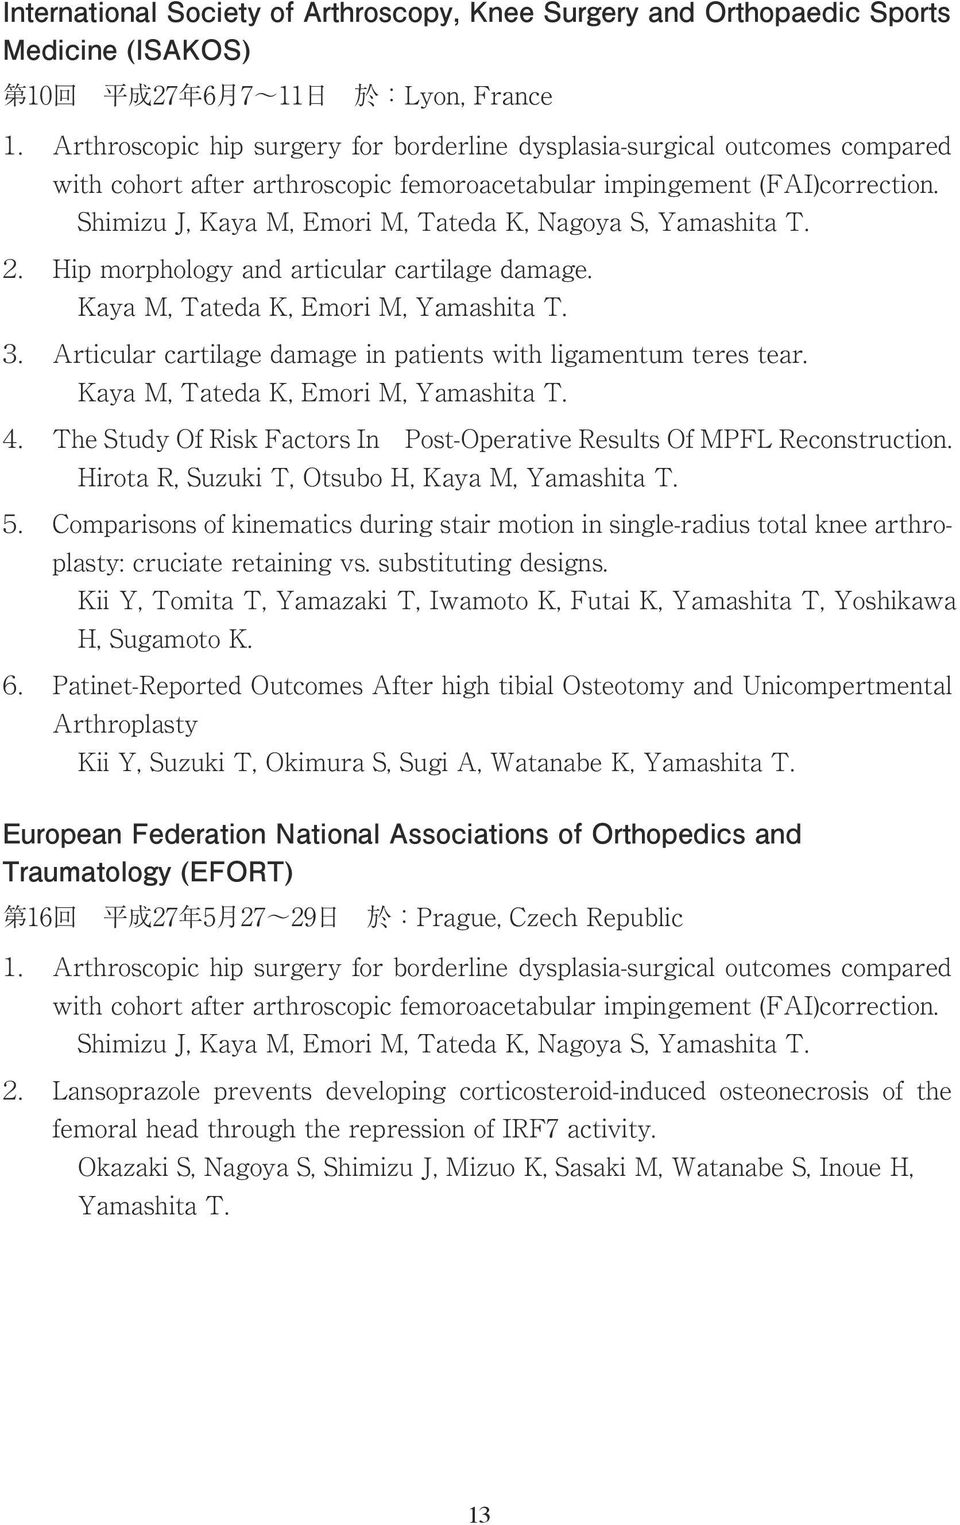 Shimizu J, Kaya M, Emori M, Tateda K, Nagoya S, Yamashita T. 2. Hip morphology and articular cartilage damage. Kaya M, Tateda K, Emori M, Yamashita T. 3.